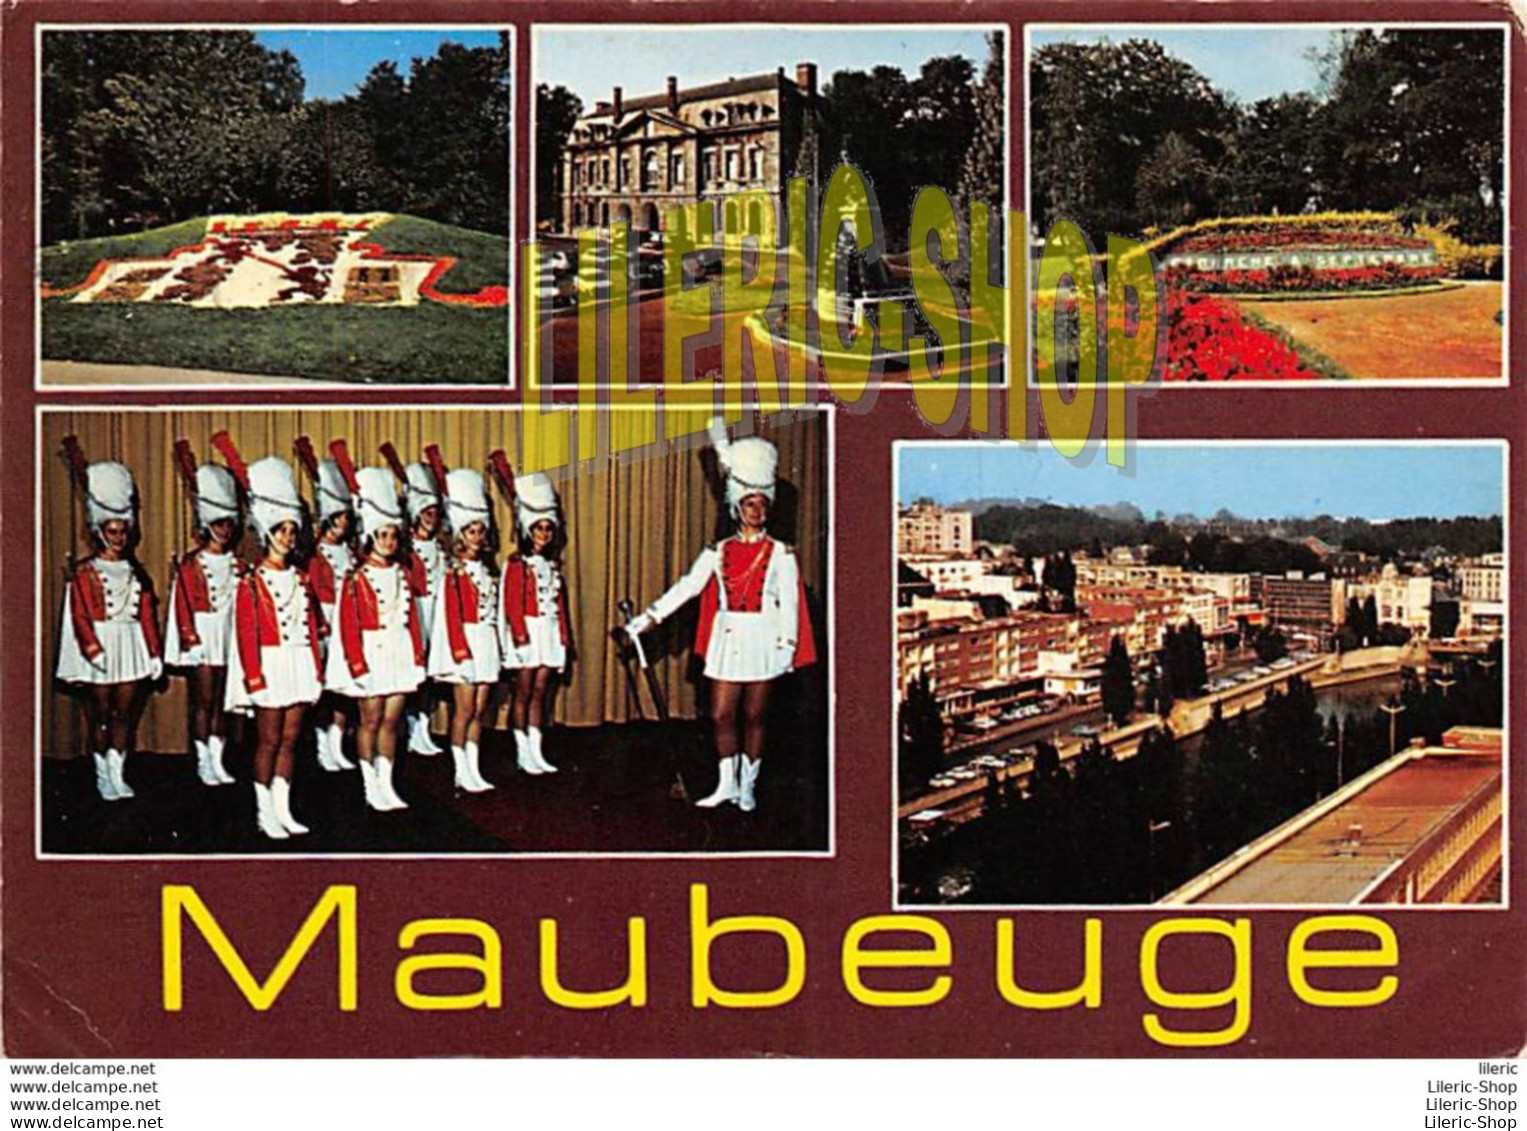 MAUBEUGE (59) - CPM 1969 MULTI VUES - PORTE DE MONS ET MONUMENT AUX MORTS - LES MAJORETTES - EDIT. LA CIGOGNE - Maubeuge